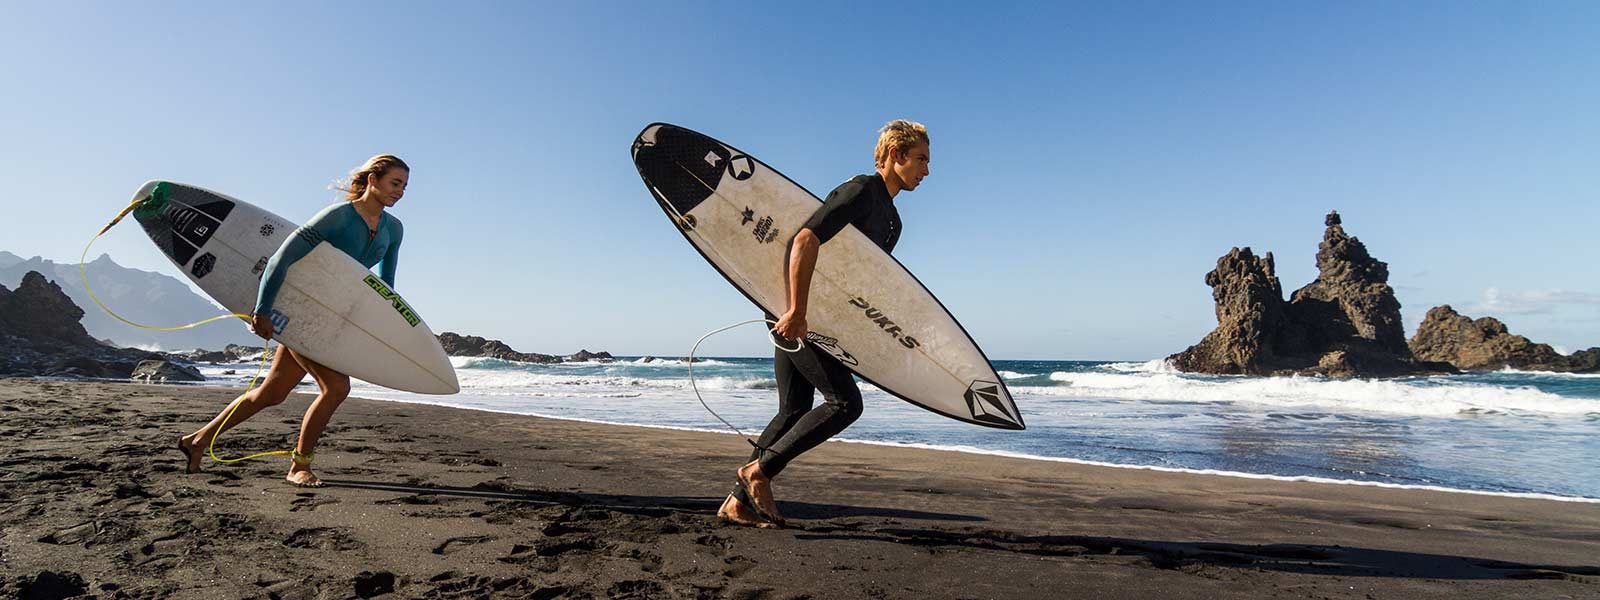 Surfers met surfboard gaan de zee in op Tenerife